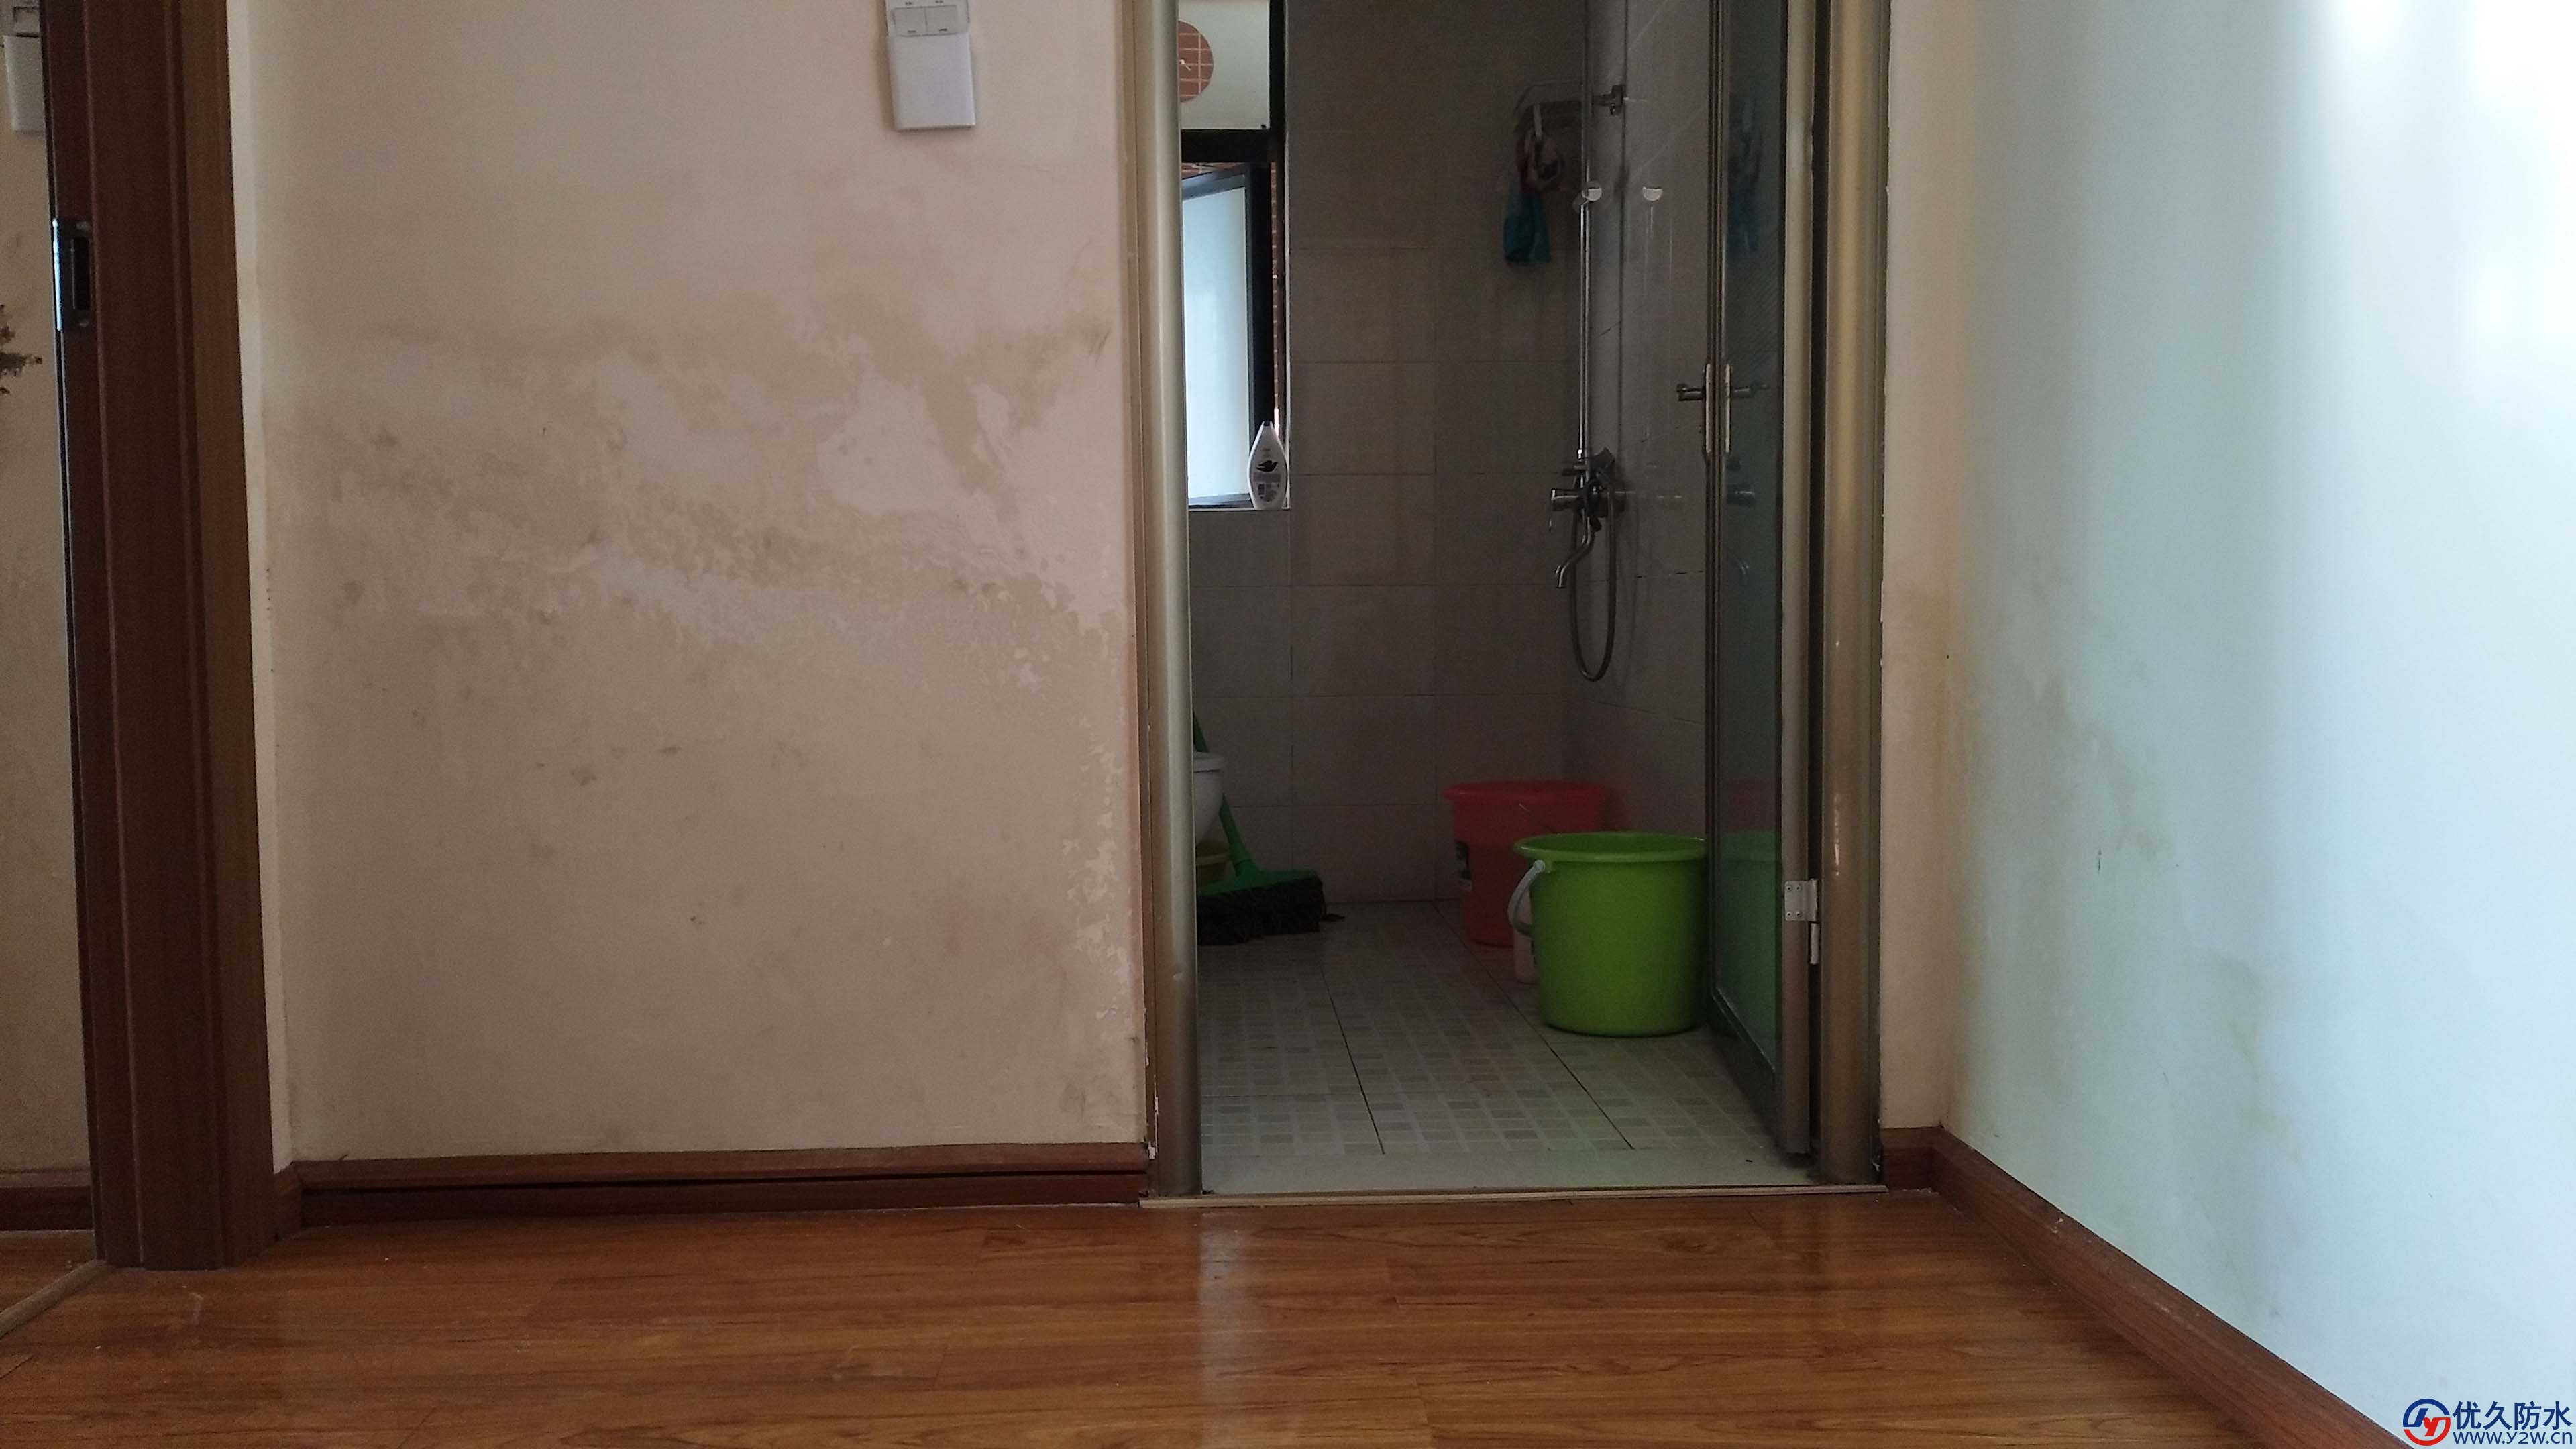 卫生间门口两侧墙壁潮湿不砸砖做防水